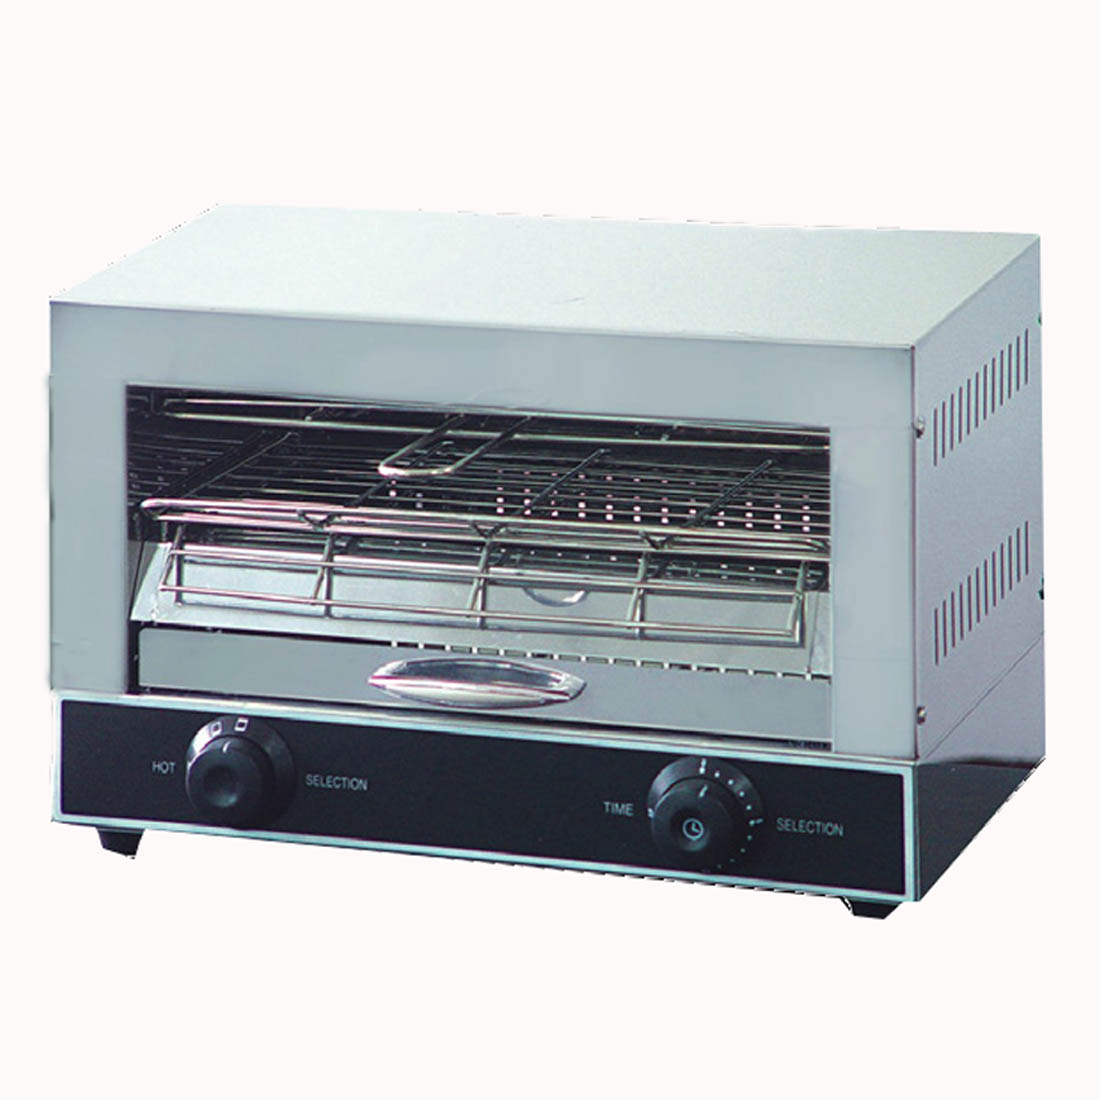 Single infrared quartz element salamander griller toaster and timer - QT-1